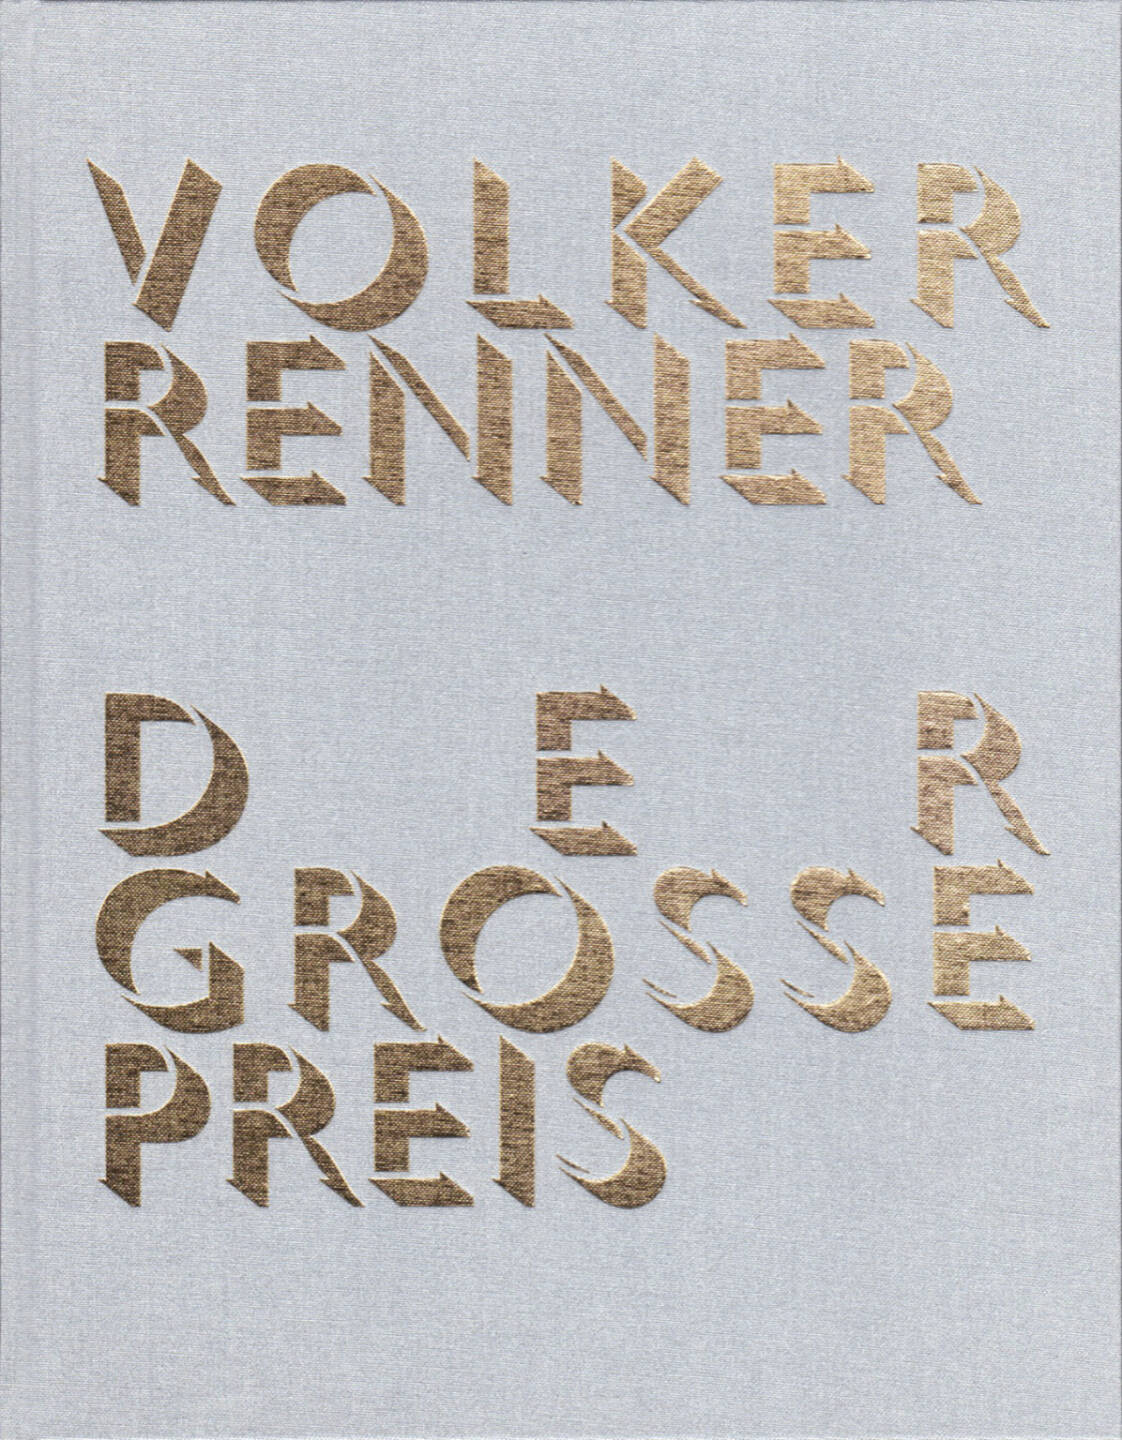 Volker Renner - Der grosse Preis, Textem Verlag 2013, Cover - http://josefchladek.com/book/volker_renner_-_der_grosse_preis